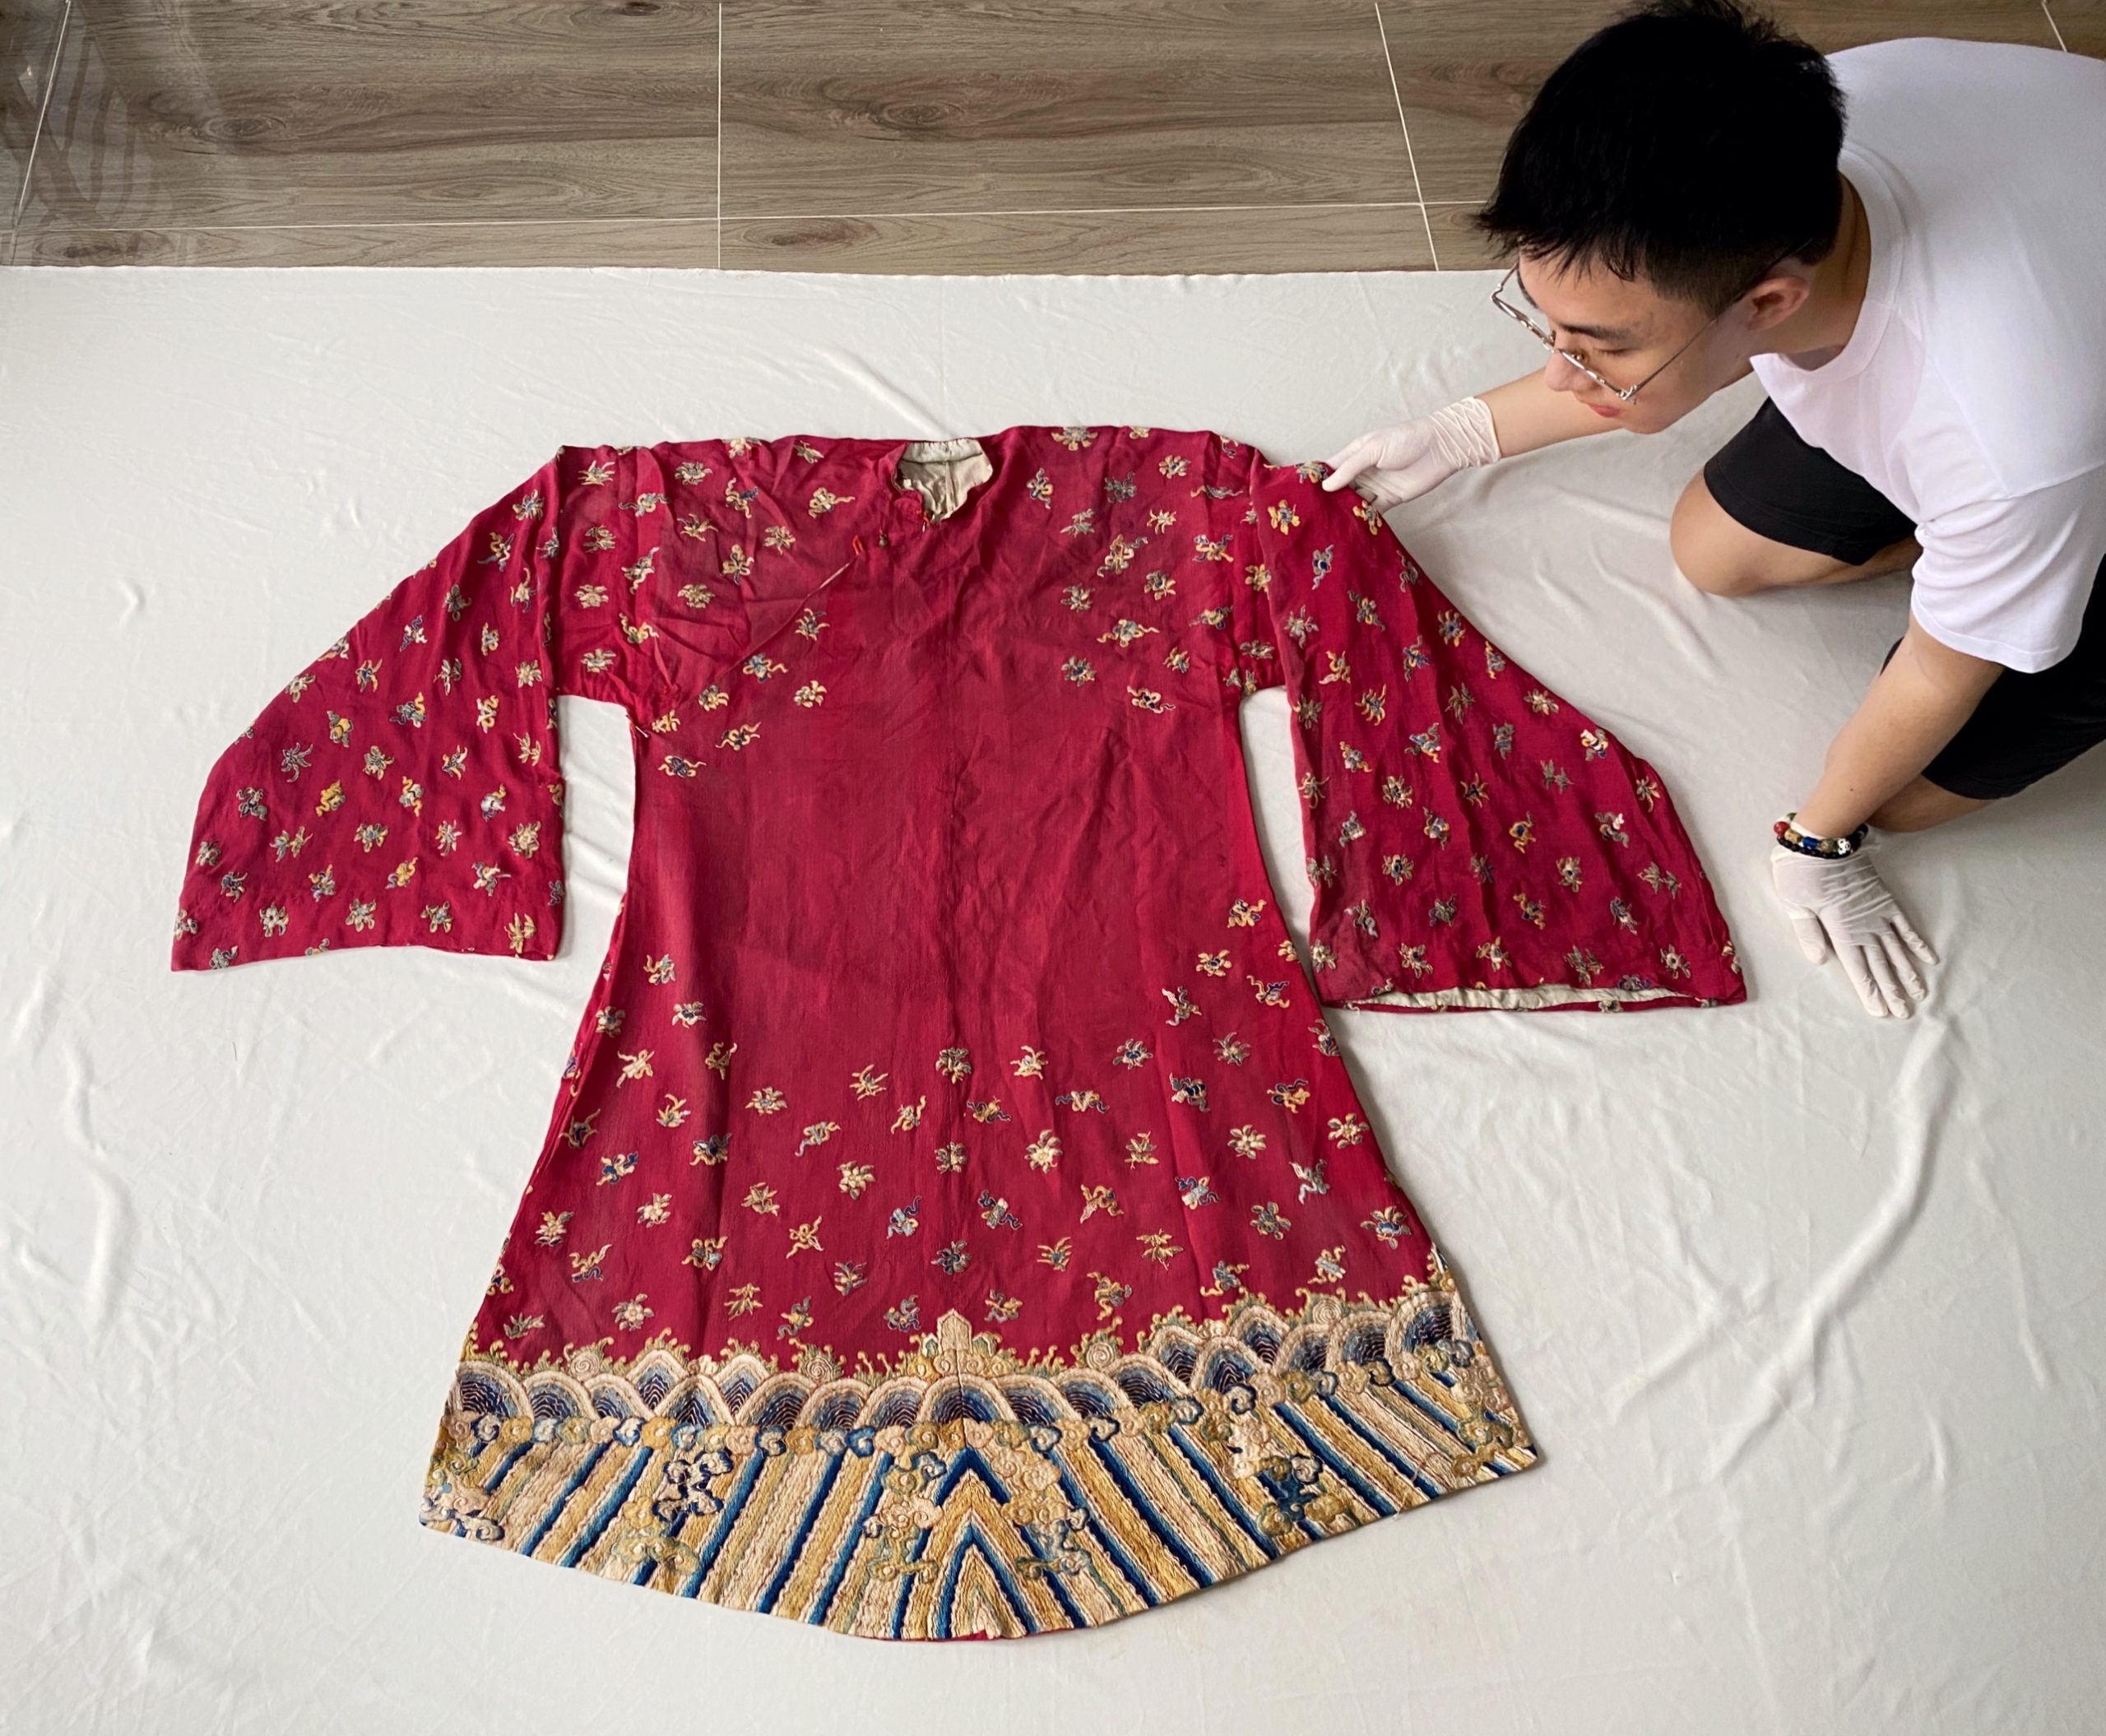 La Quốc Bảo và áo cưới hoàng gia triều Nguyễn từ Hà Lan